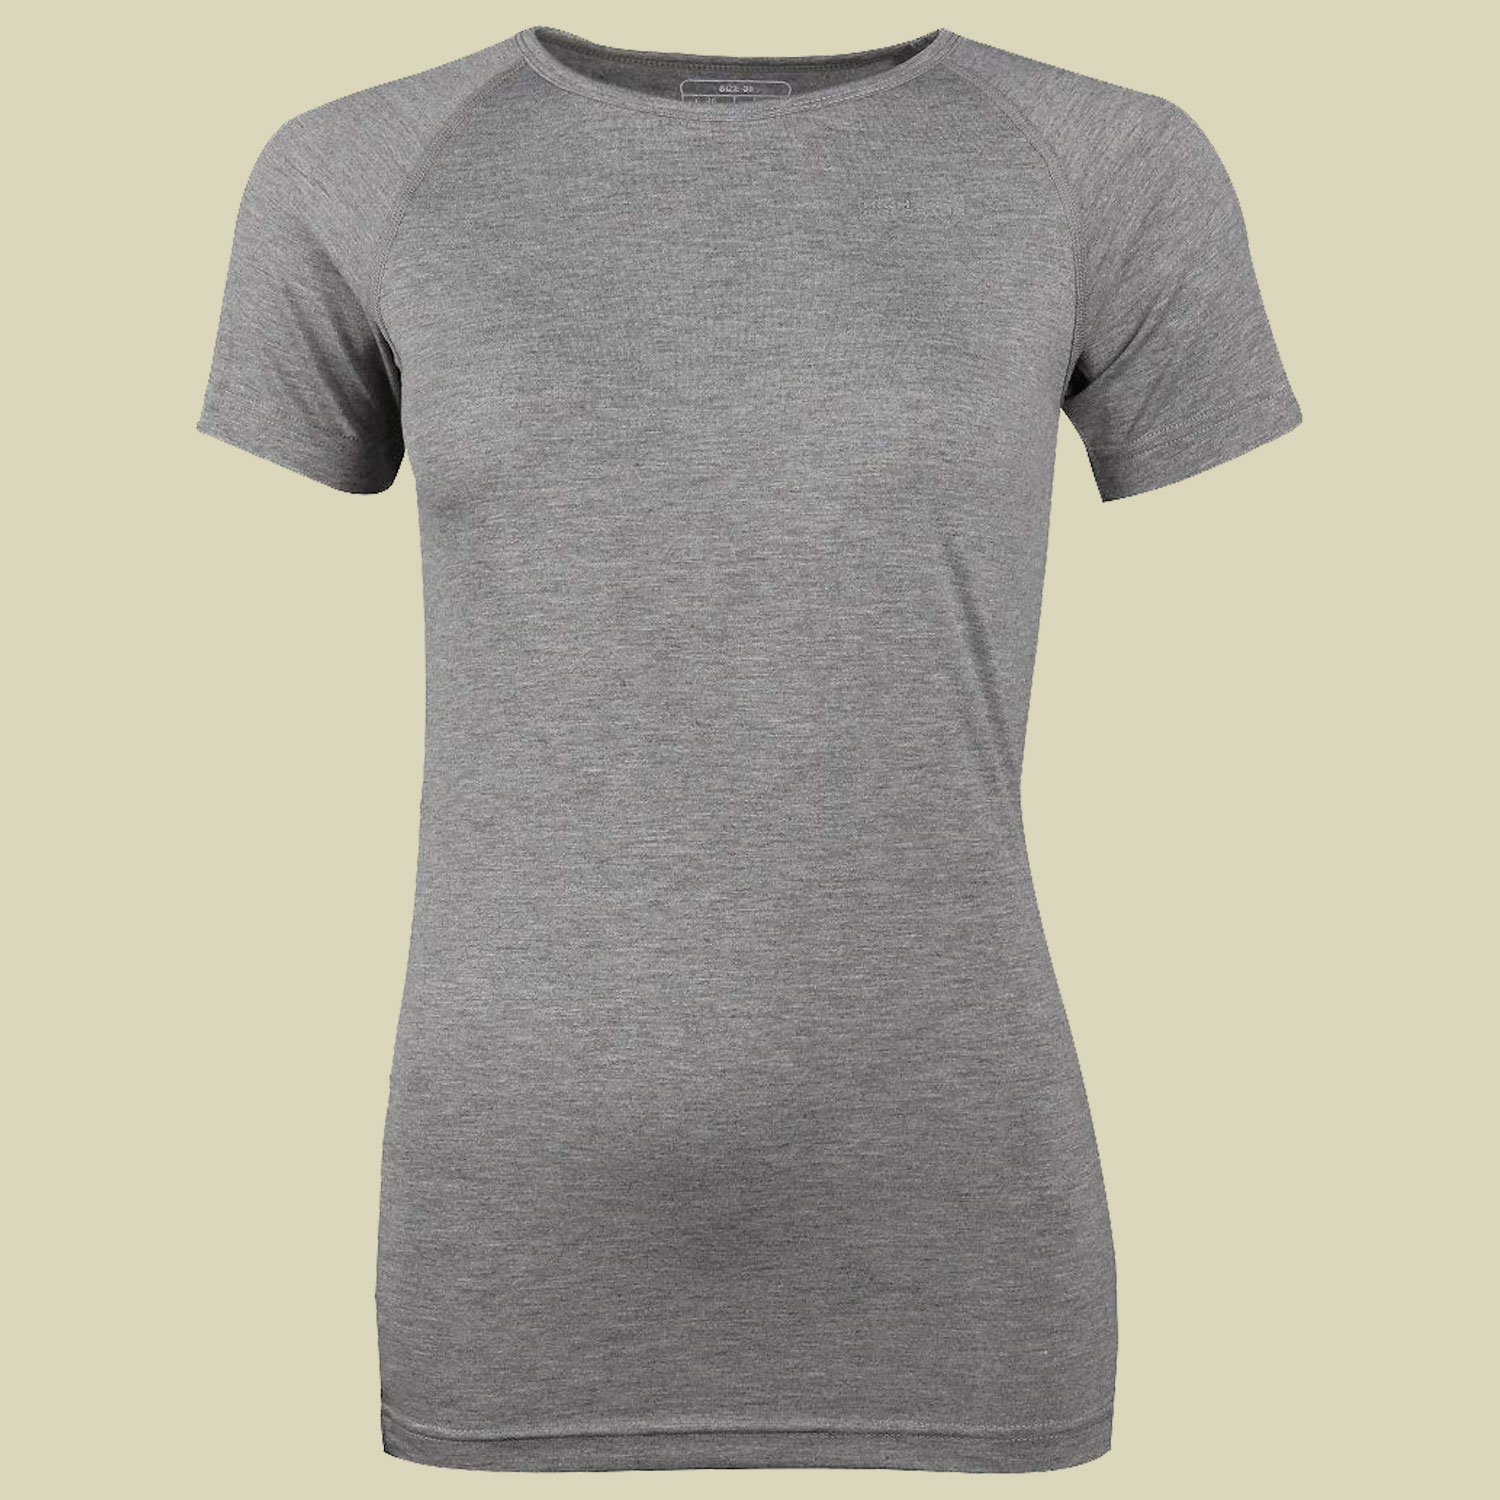 Bergen ½ Arm-Shirt Women Größe 36 Farbe 7002 hellgrau melange